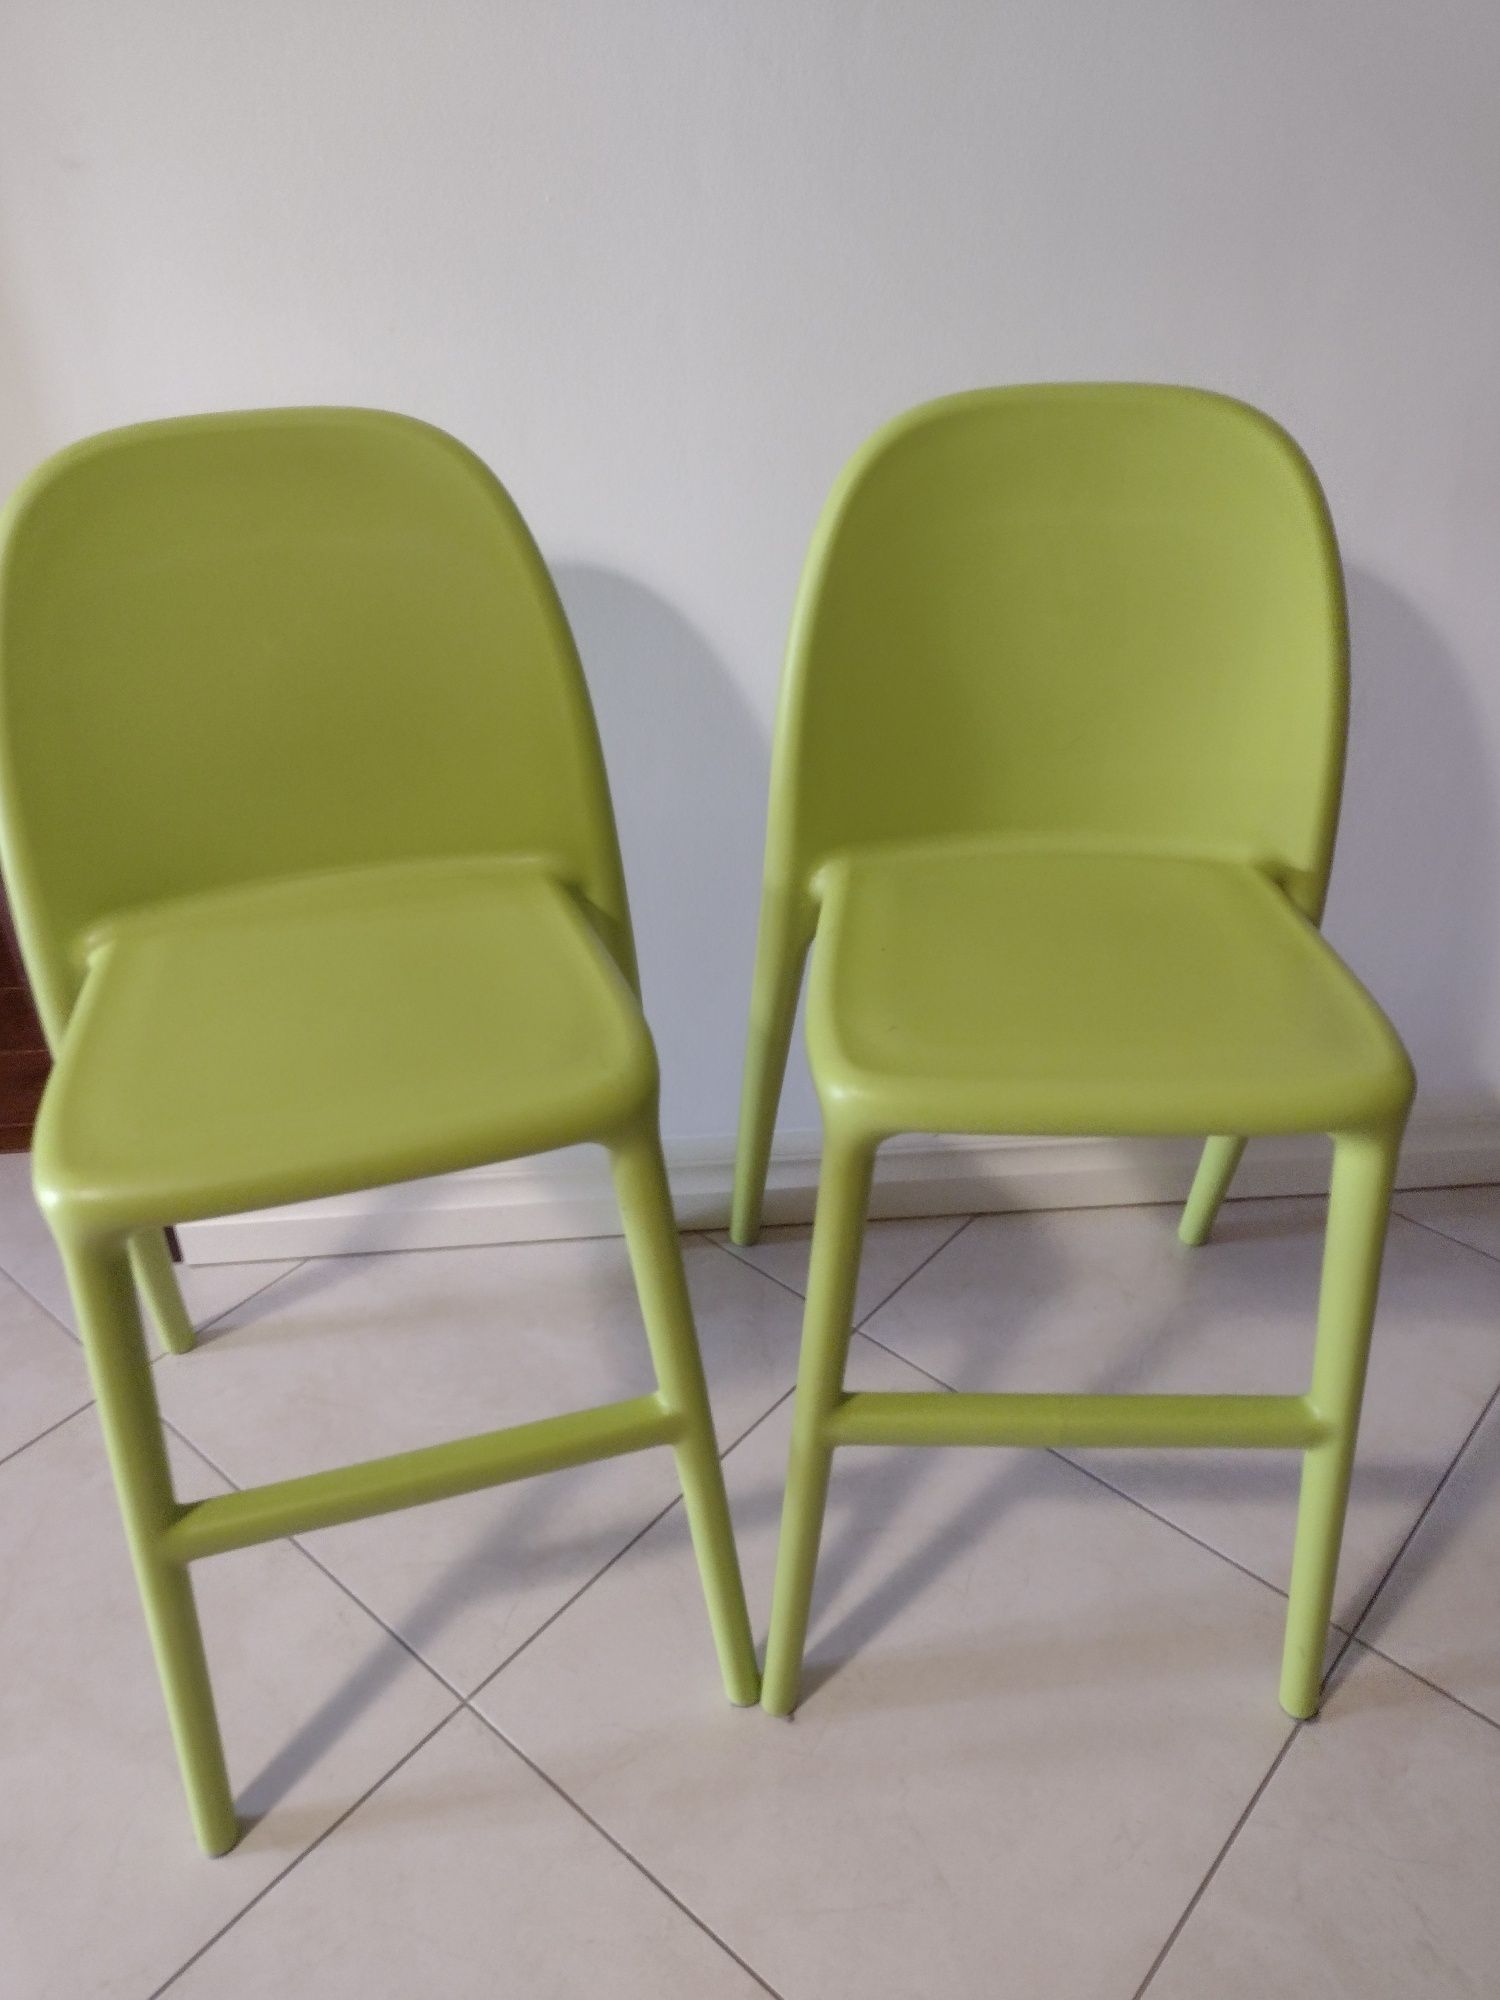 2 krzesła IKEA type Urban